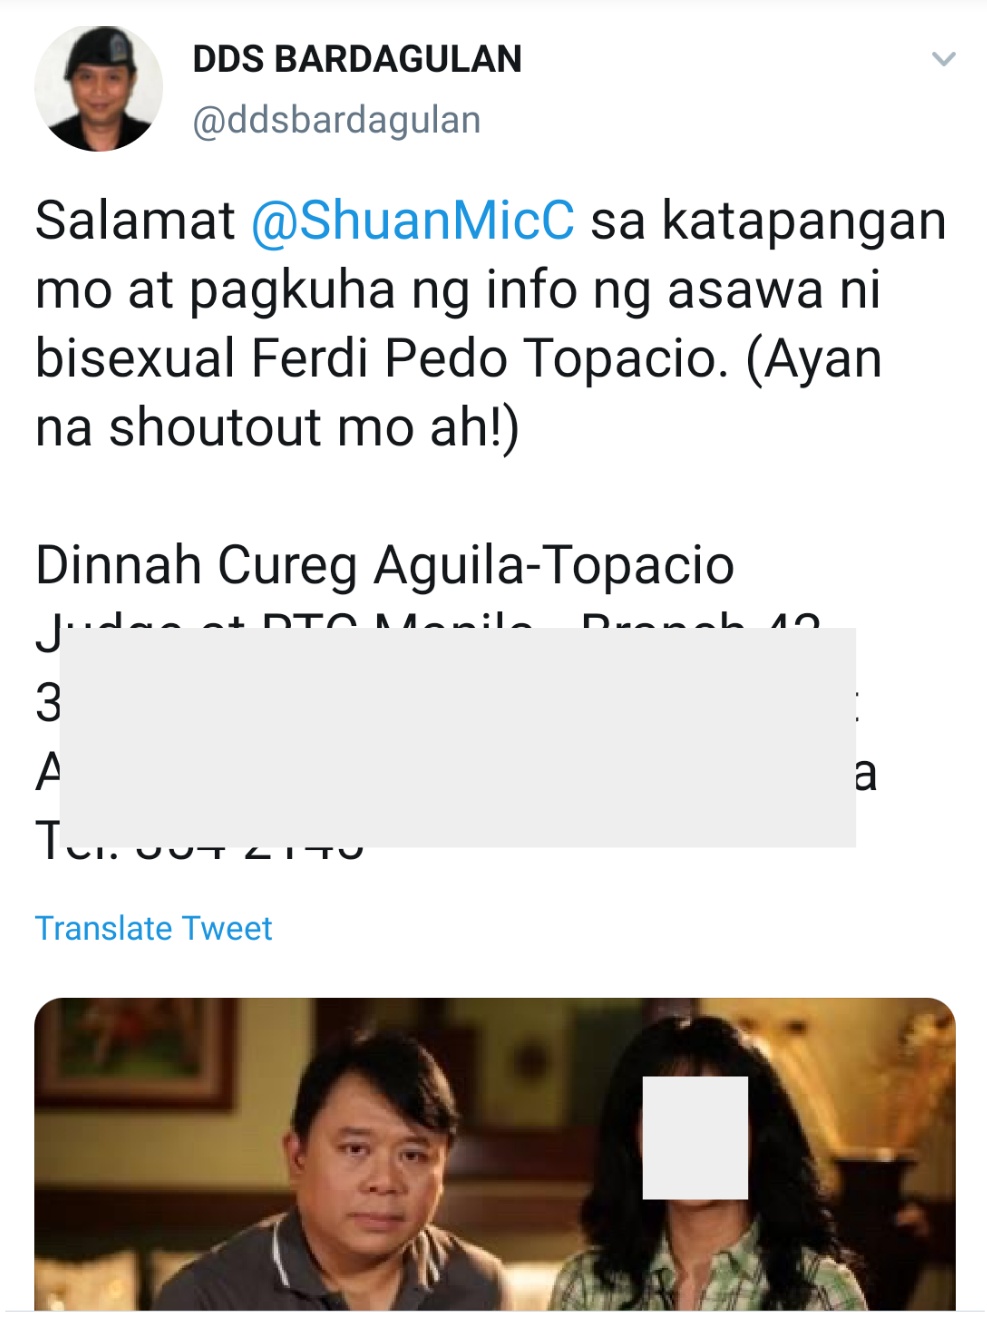 Salamat @ShuanMicC sa katapangan mo at pagkuha ng info ng asawa ni bisexual Ferdi Pedo Topacio. (Ayan na shoutout mo ah!) (NB: rest of tweet redacted due to privacy concerns)